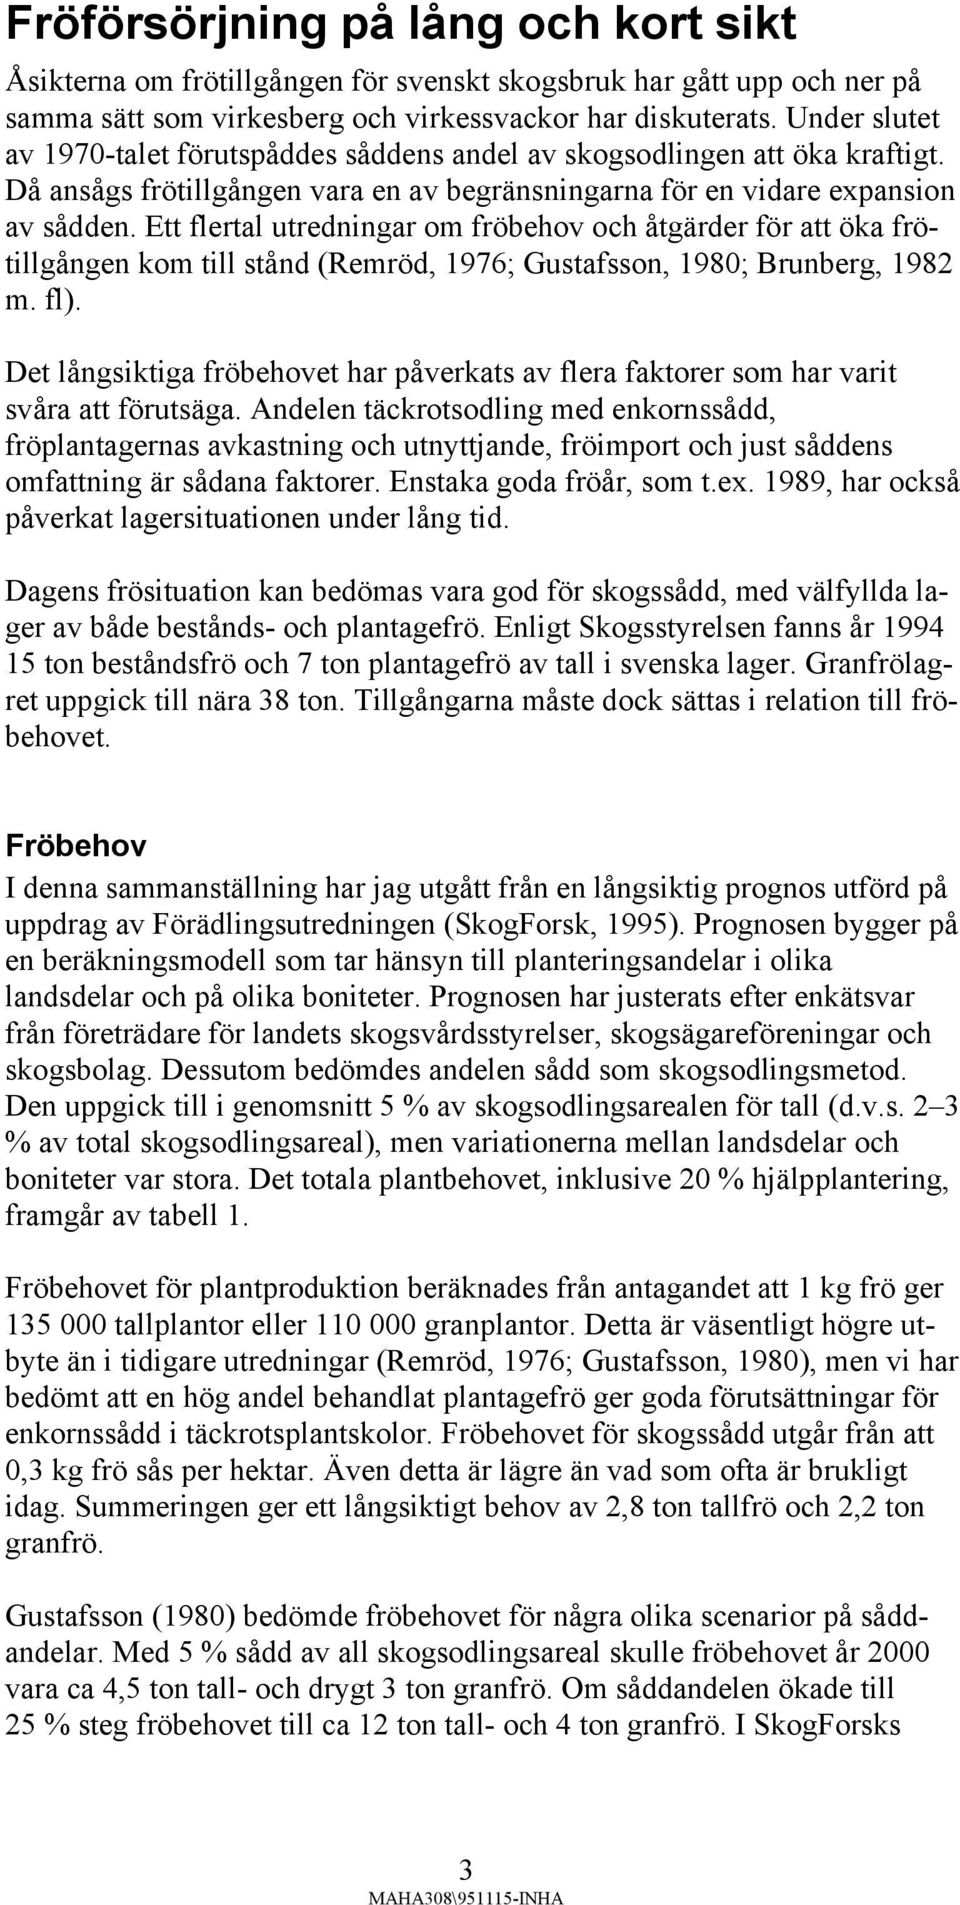 Ett flertal utredningar om fröbehov och åtgärder för att öka frötillgången kom till stånd (Remröd, 1976; Gustafsson, 1980; Brunberg, 1982 m. fl).